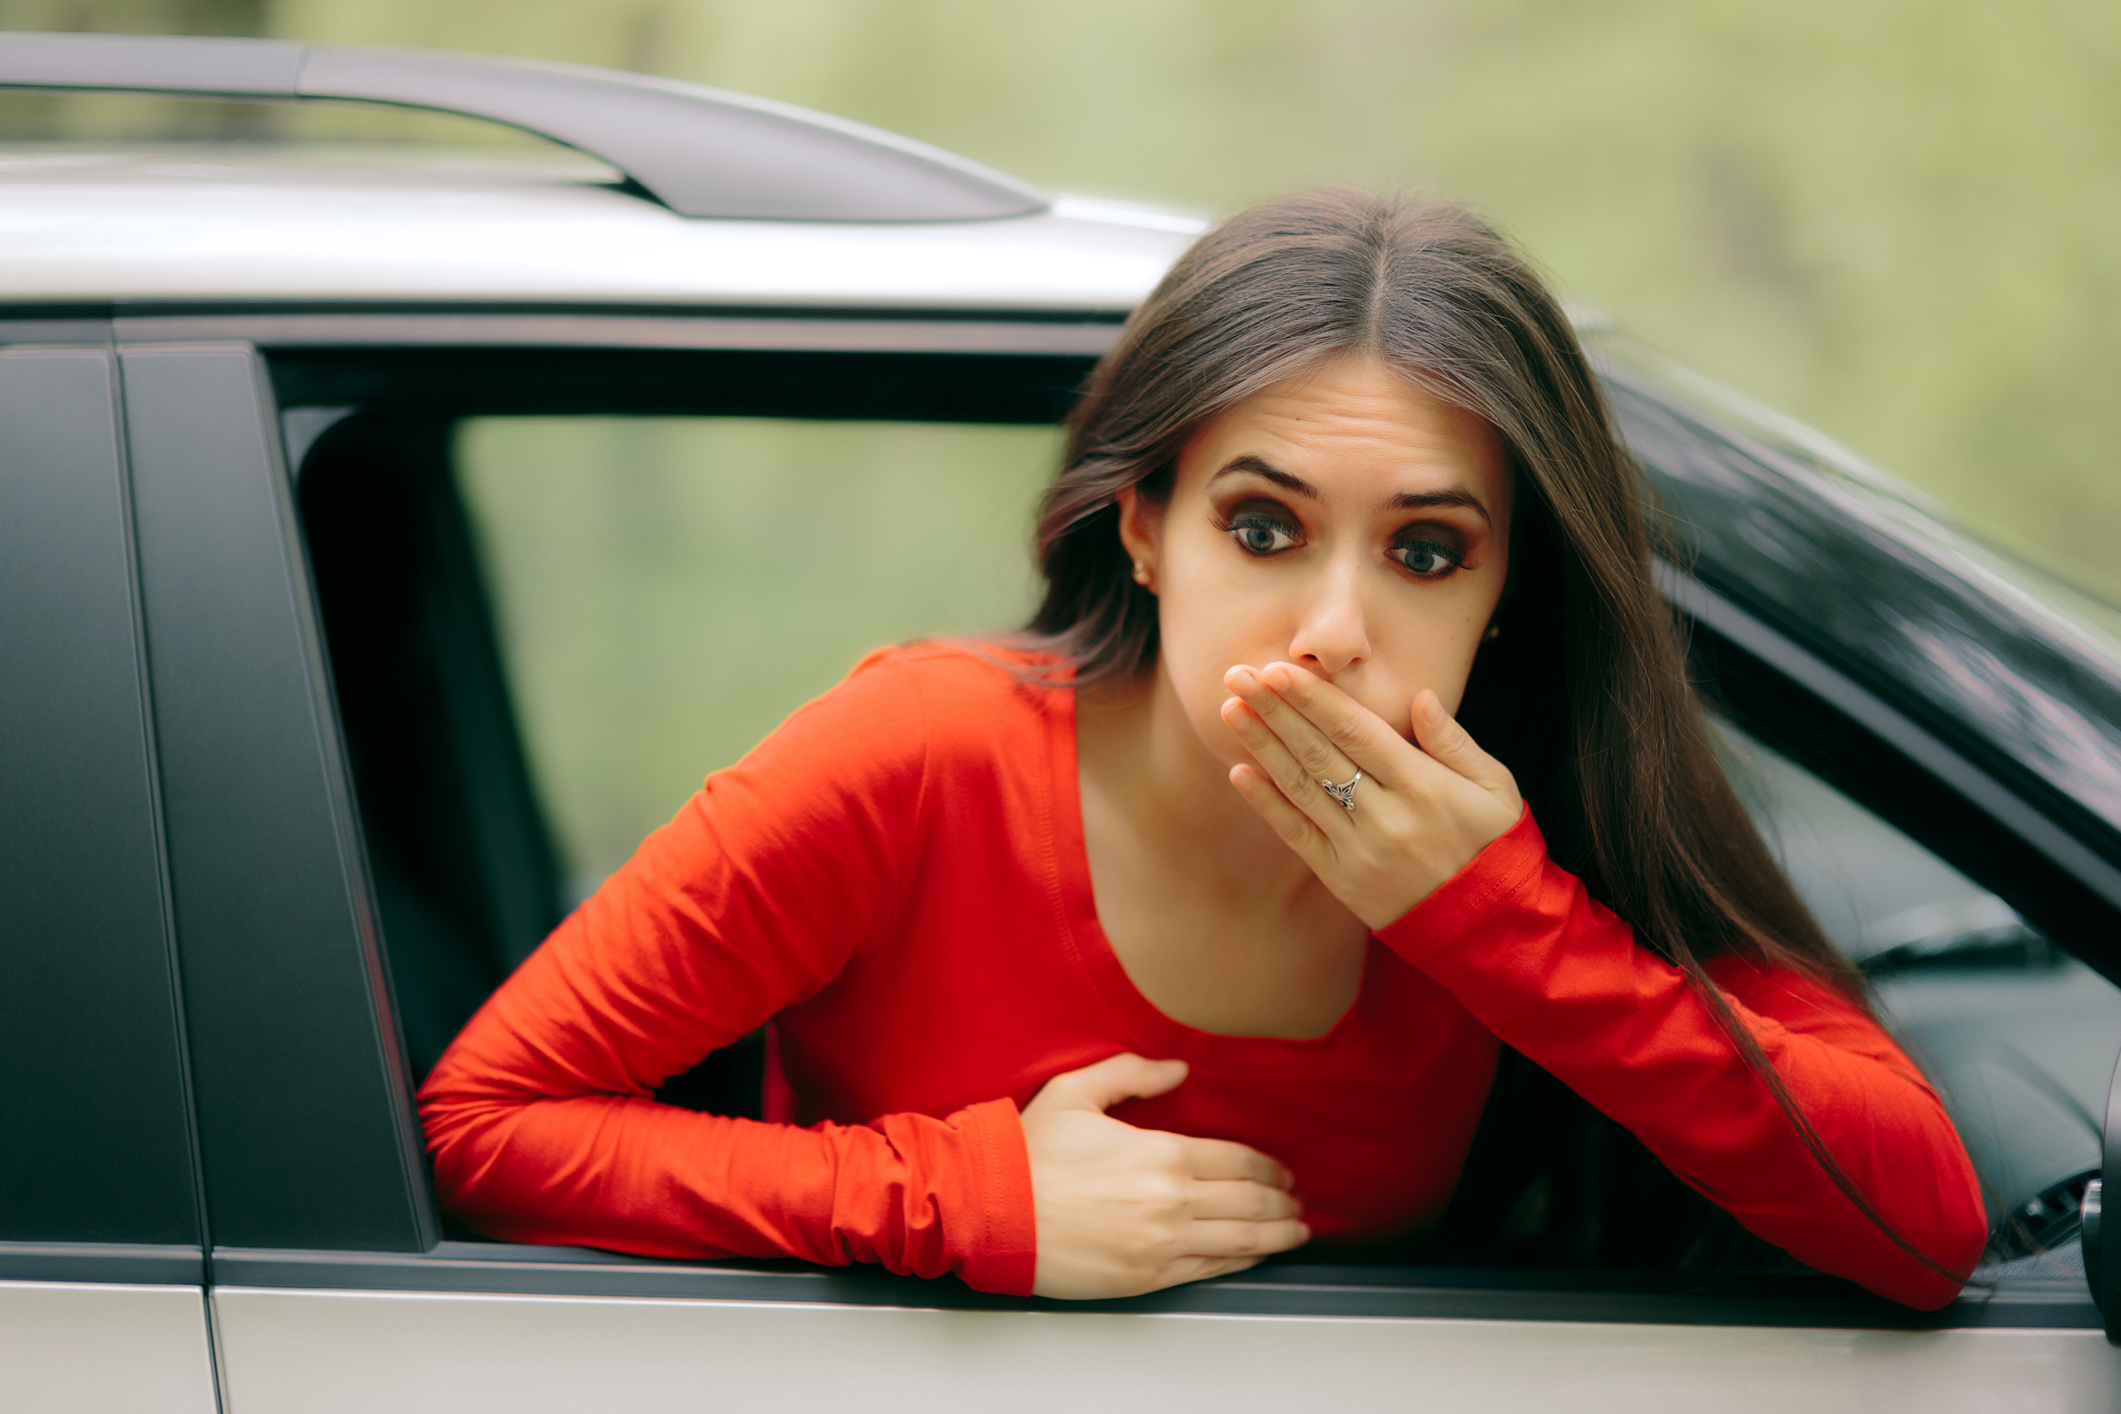 Kinetóza: Prečo vzniká u dospelých, detí a nie len v aute? + Liečba